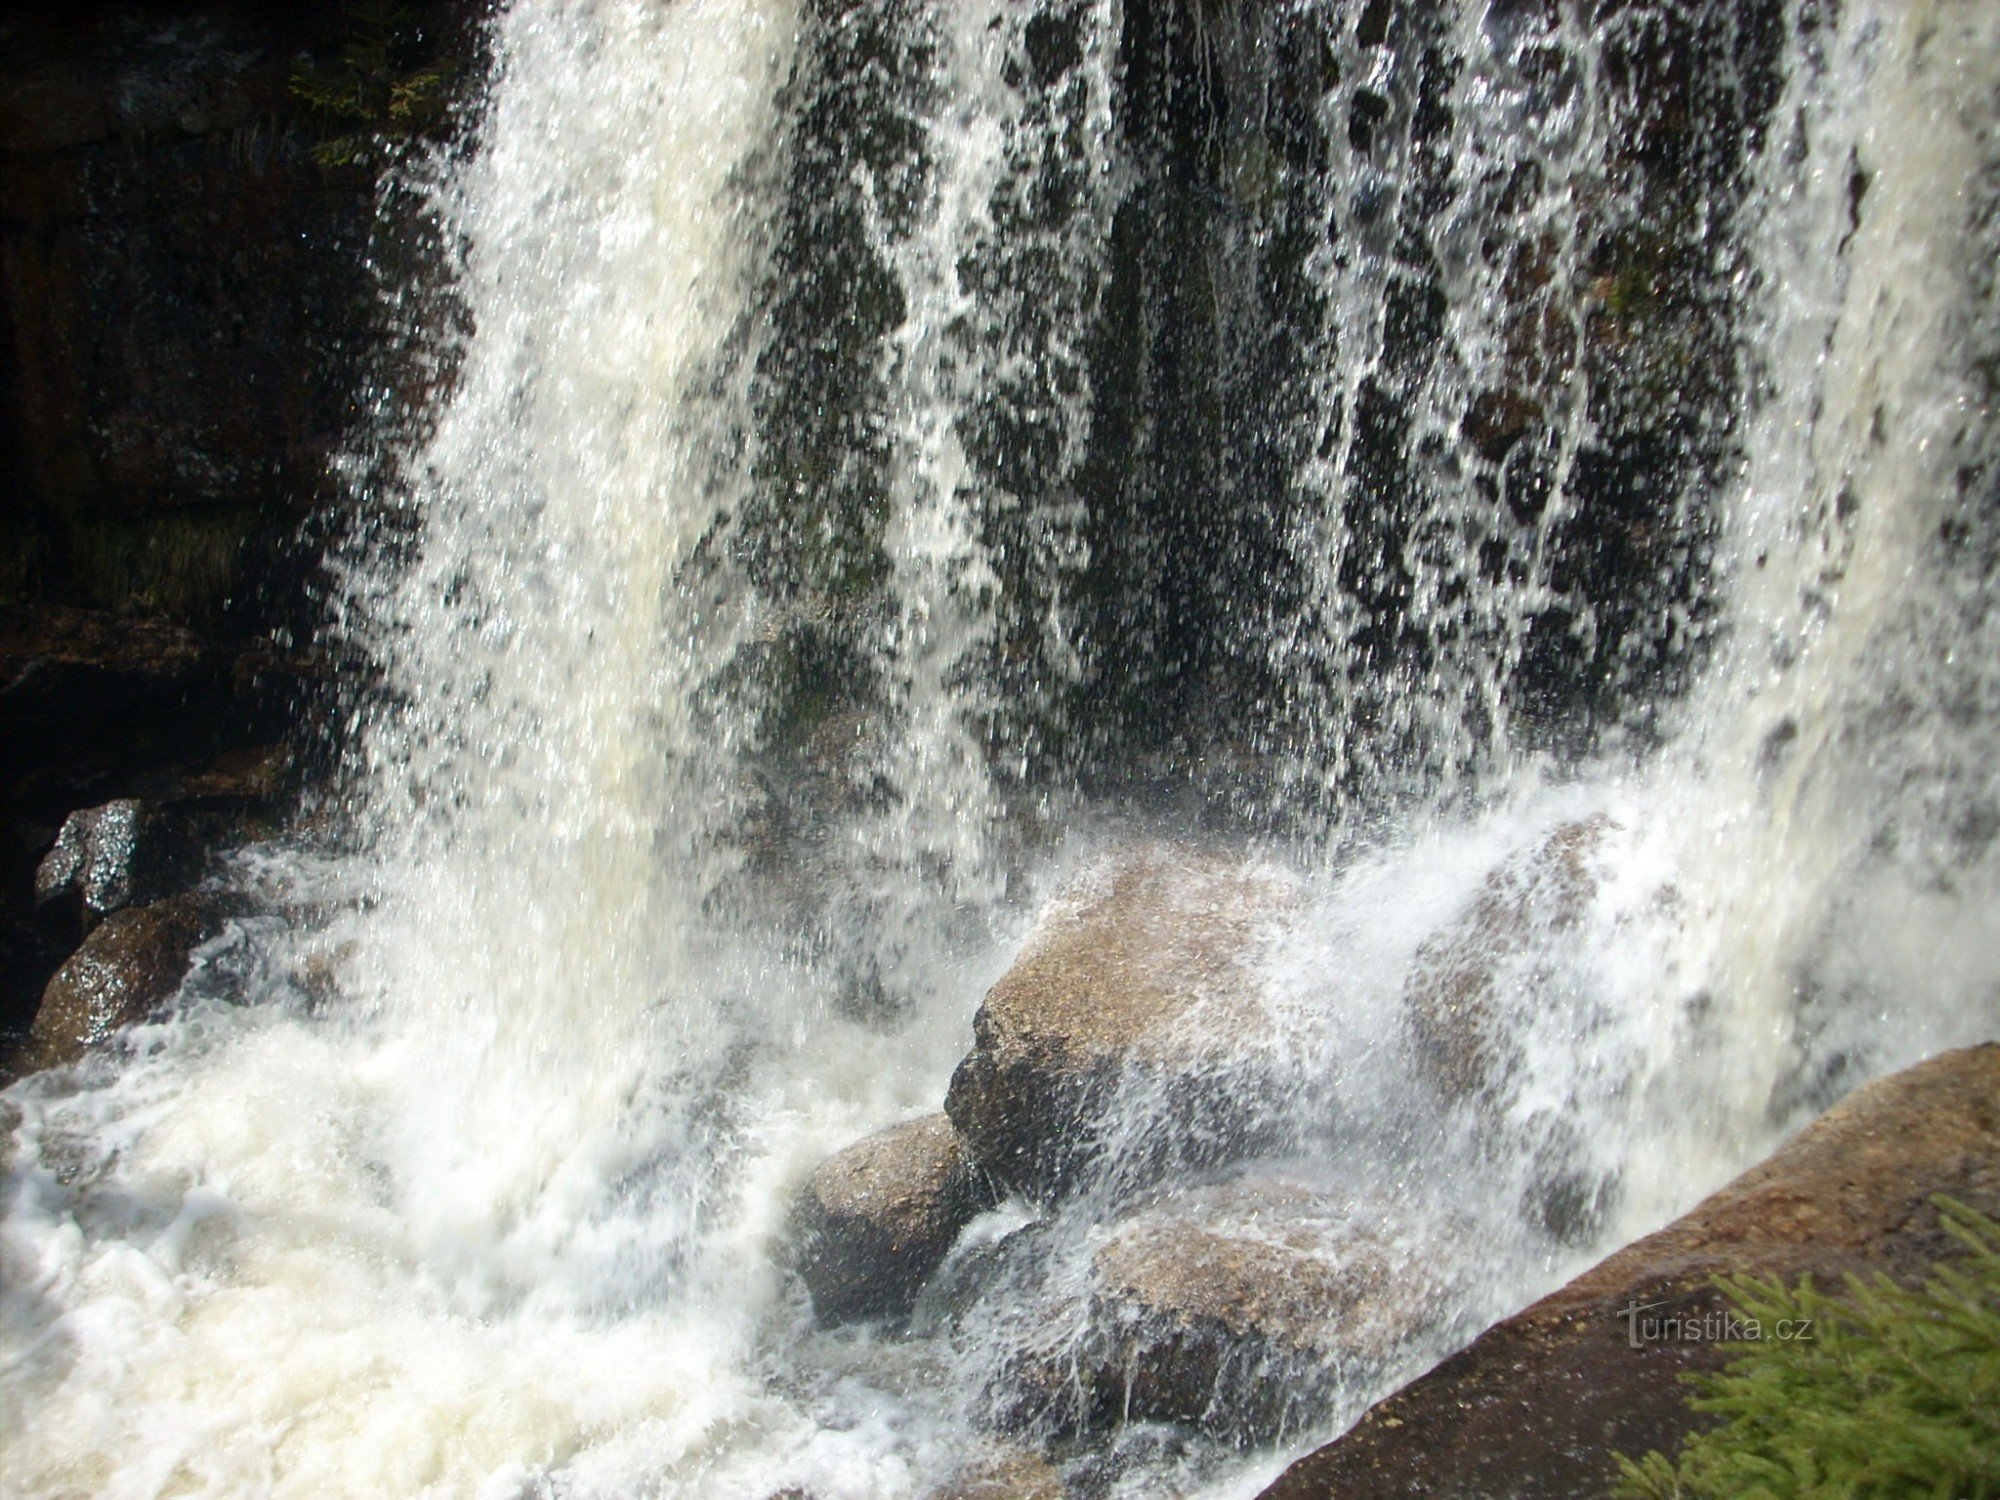 A maior e mais bela cachoeira das montanhas Jizera - cachoeiras Jedlové